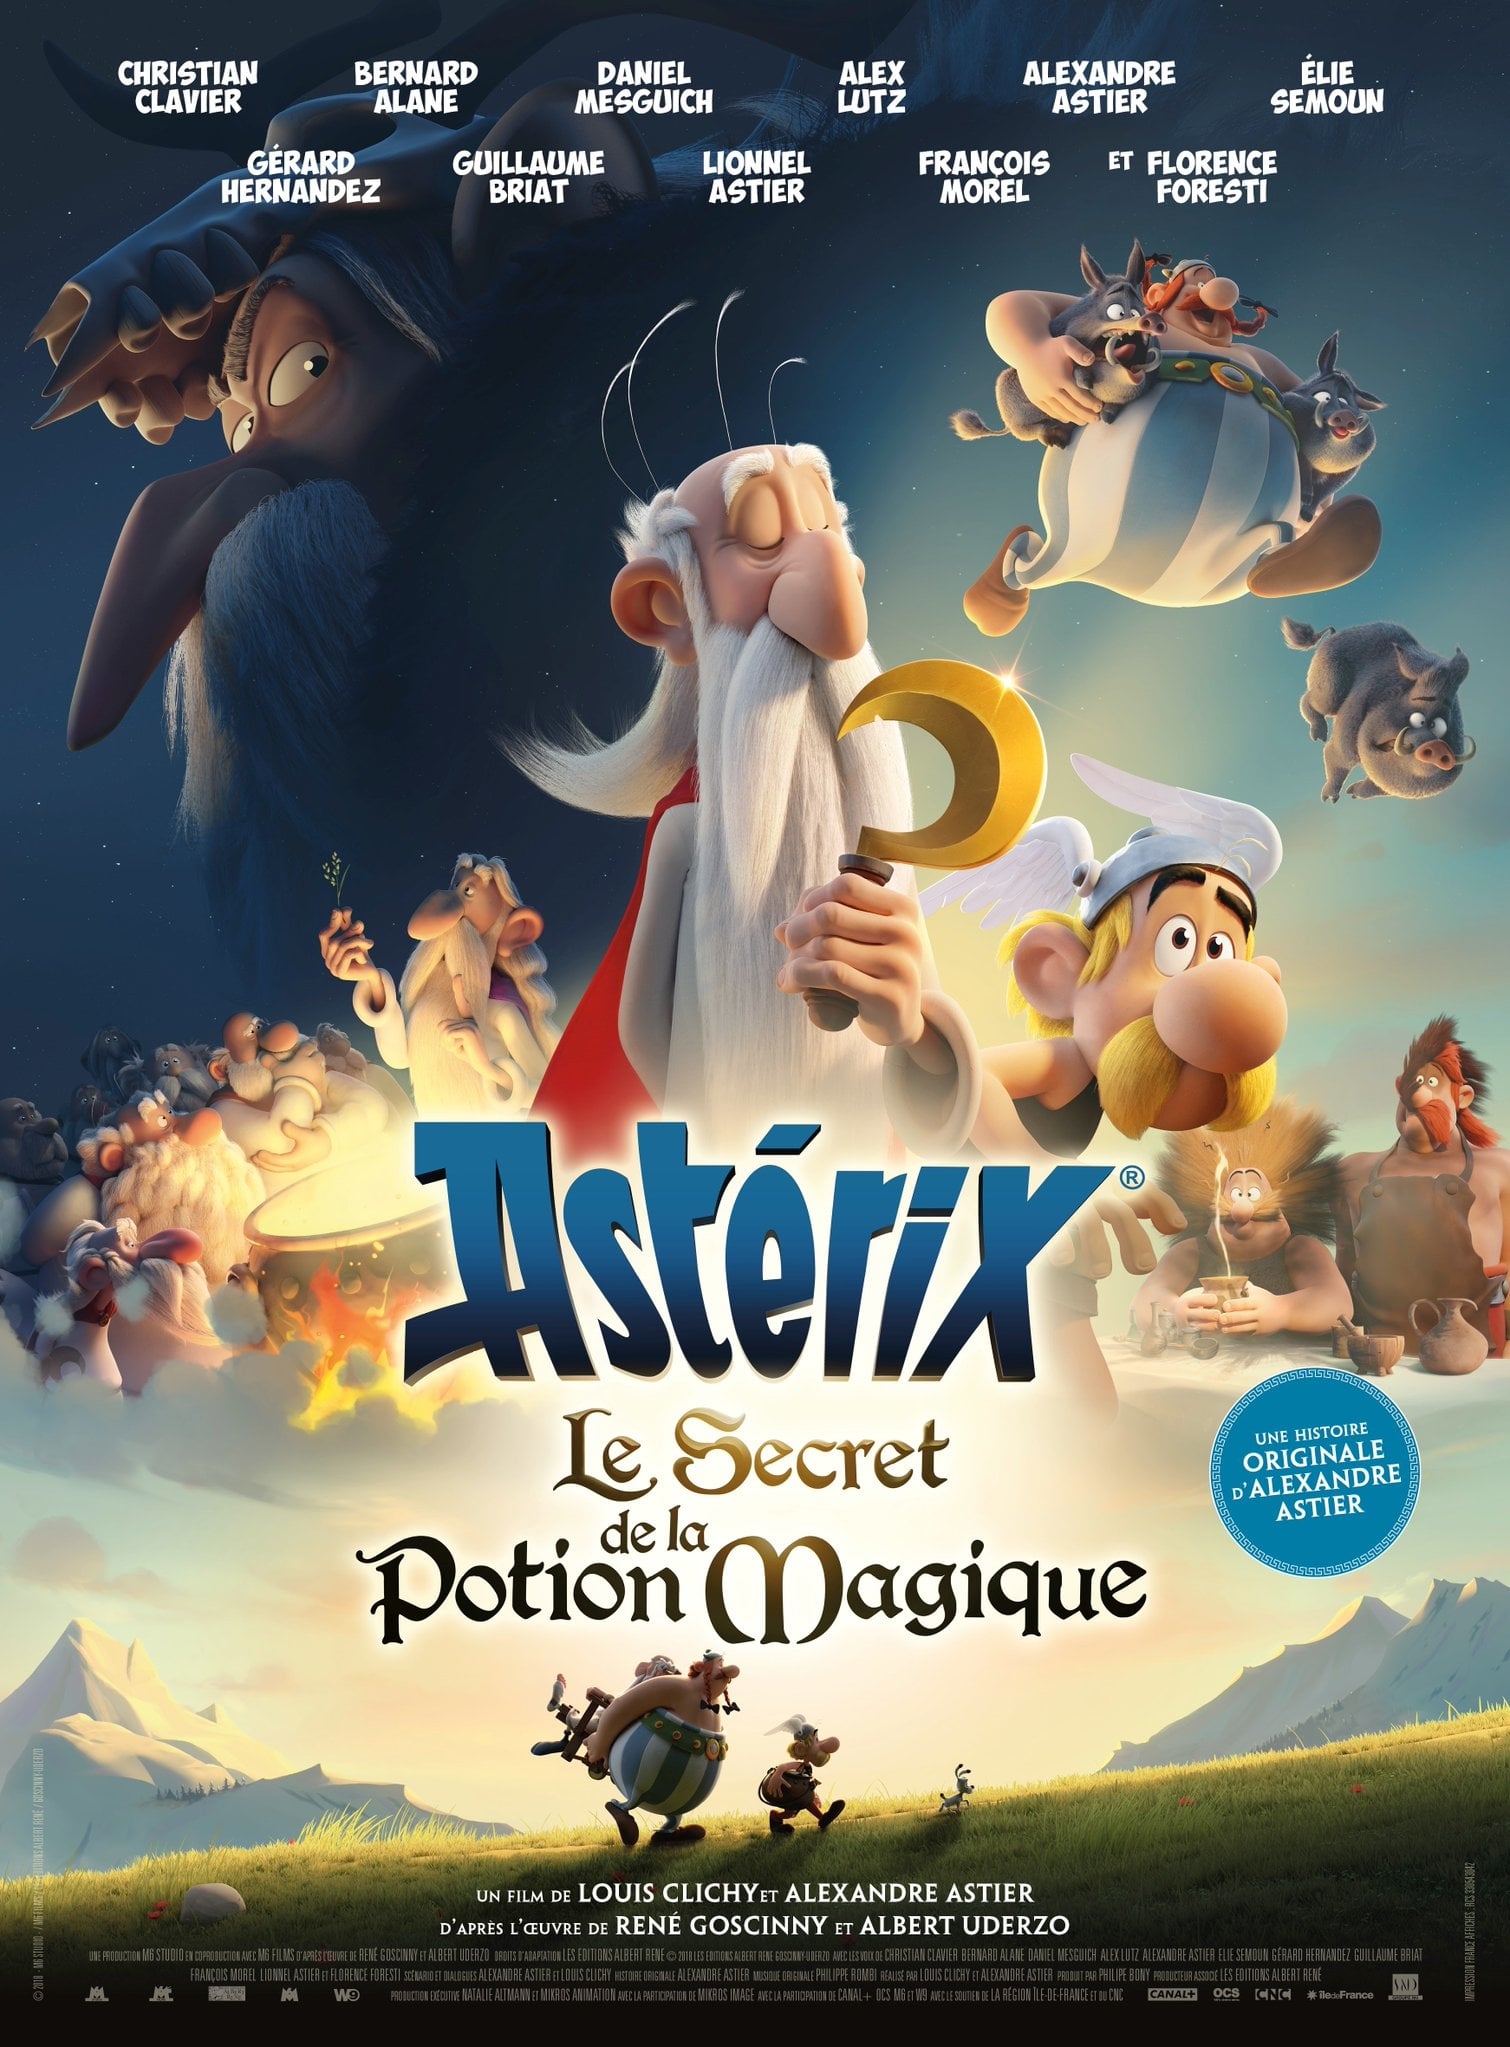 Asterix: The Magic Potion ’s Secret Picture